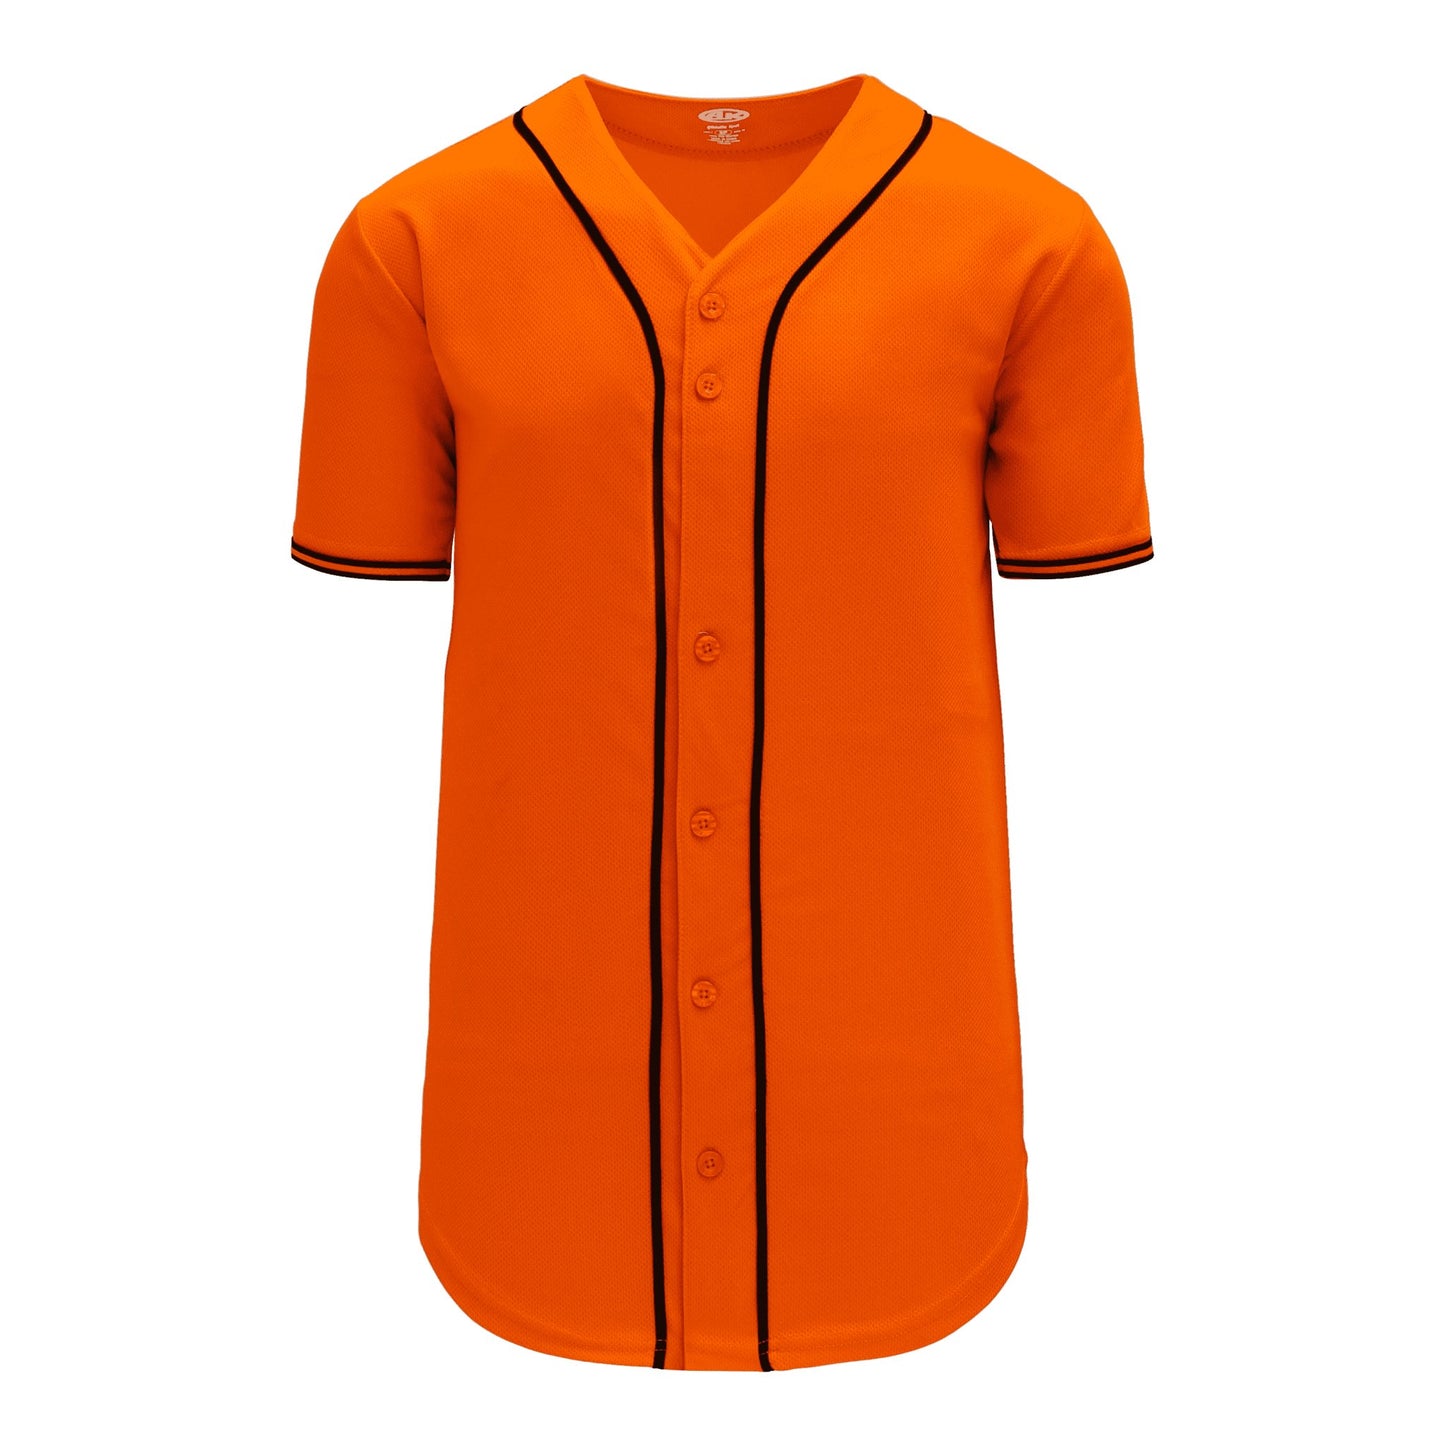 Full Button Baseball Jerseys: Pro Team Patterns, Youth Cut